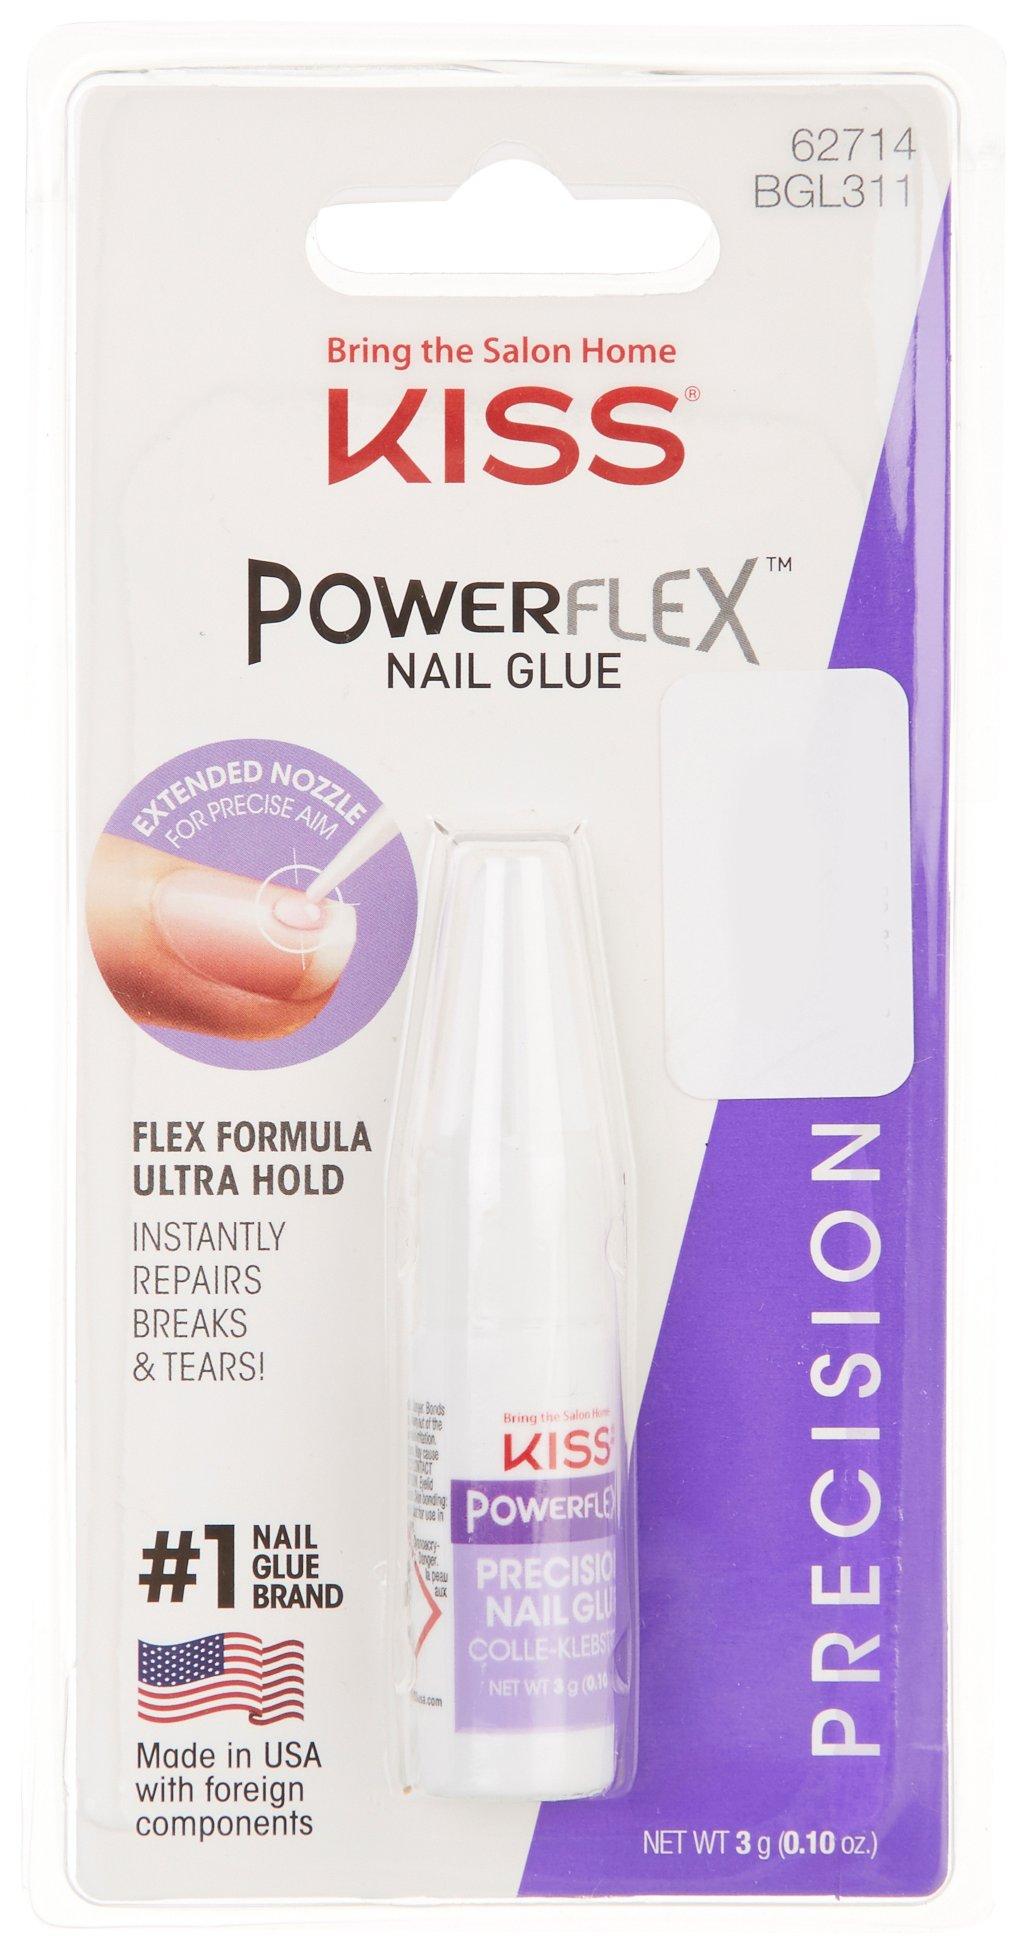 Power Flex Precision Nail Glue